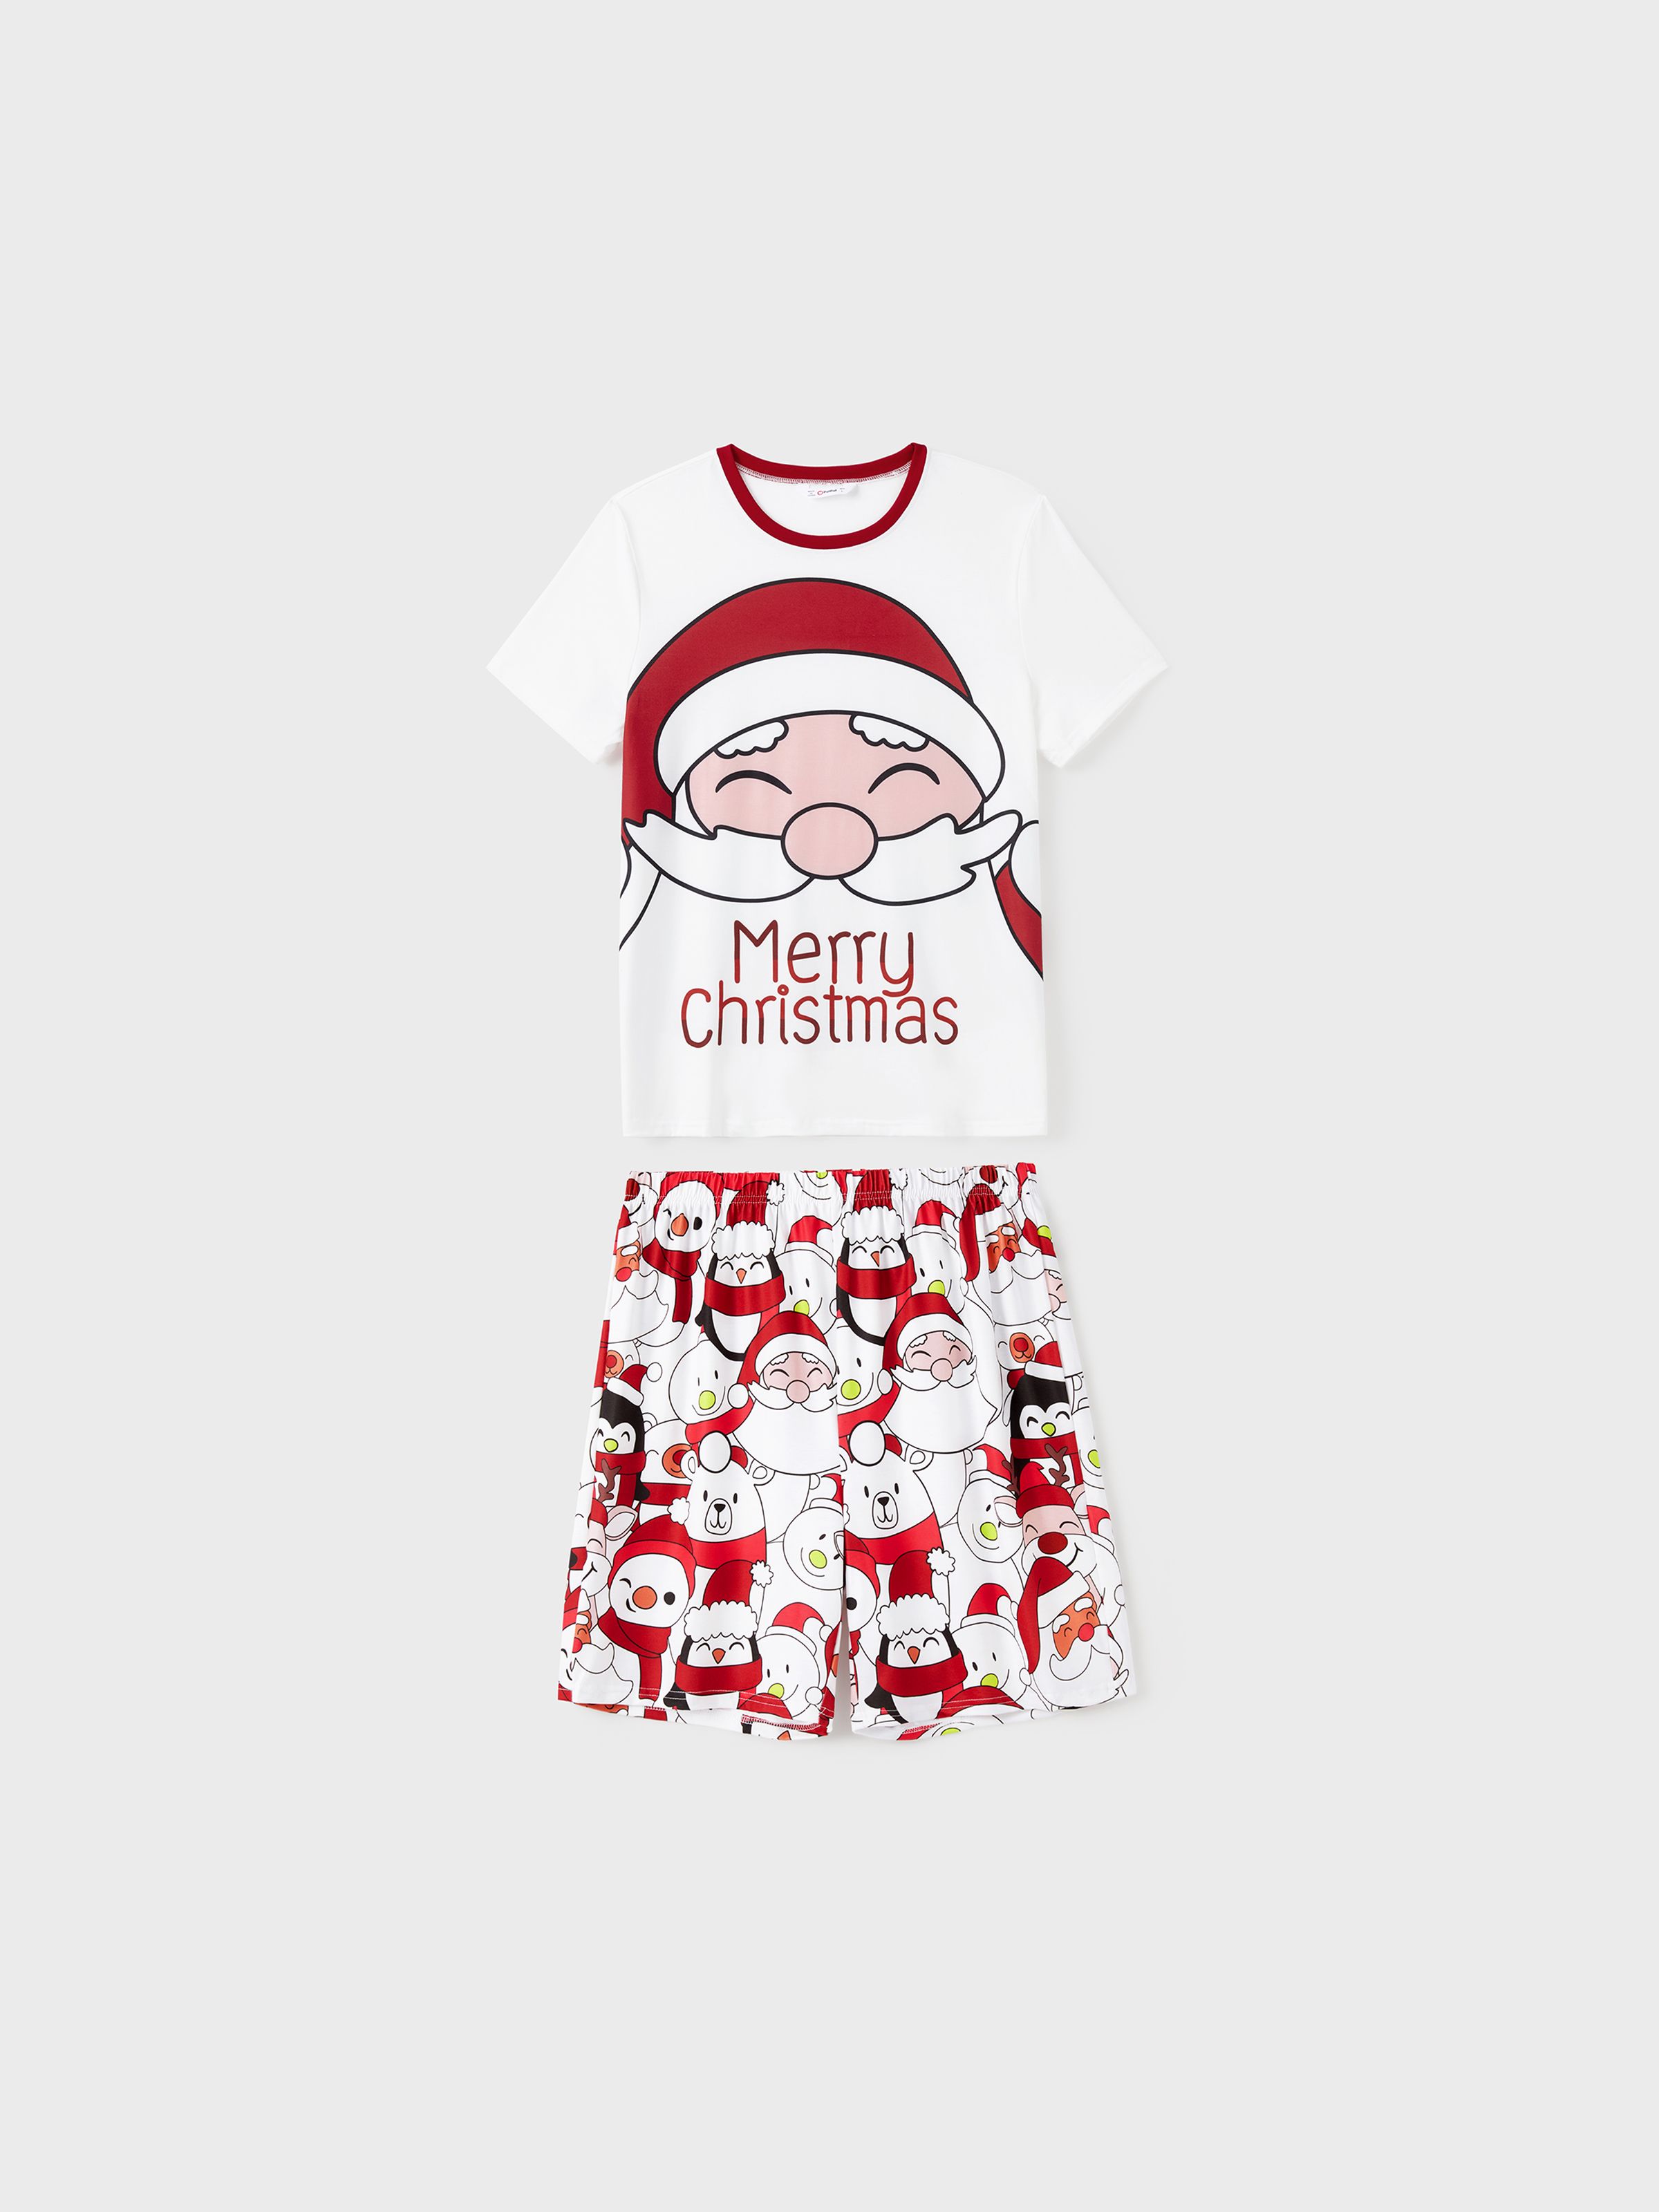 

Christmas Santa and Snowman Print Family Matching Short-sleeve Tops and Shorts Pajamas Sets (Flame Resistant)